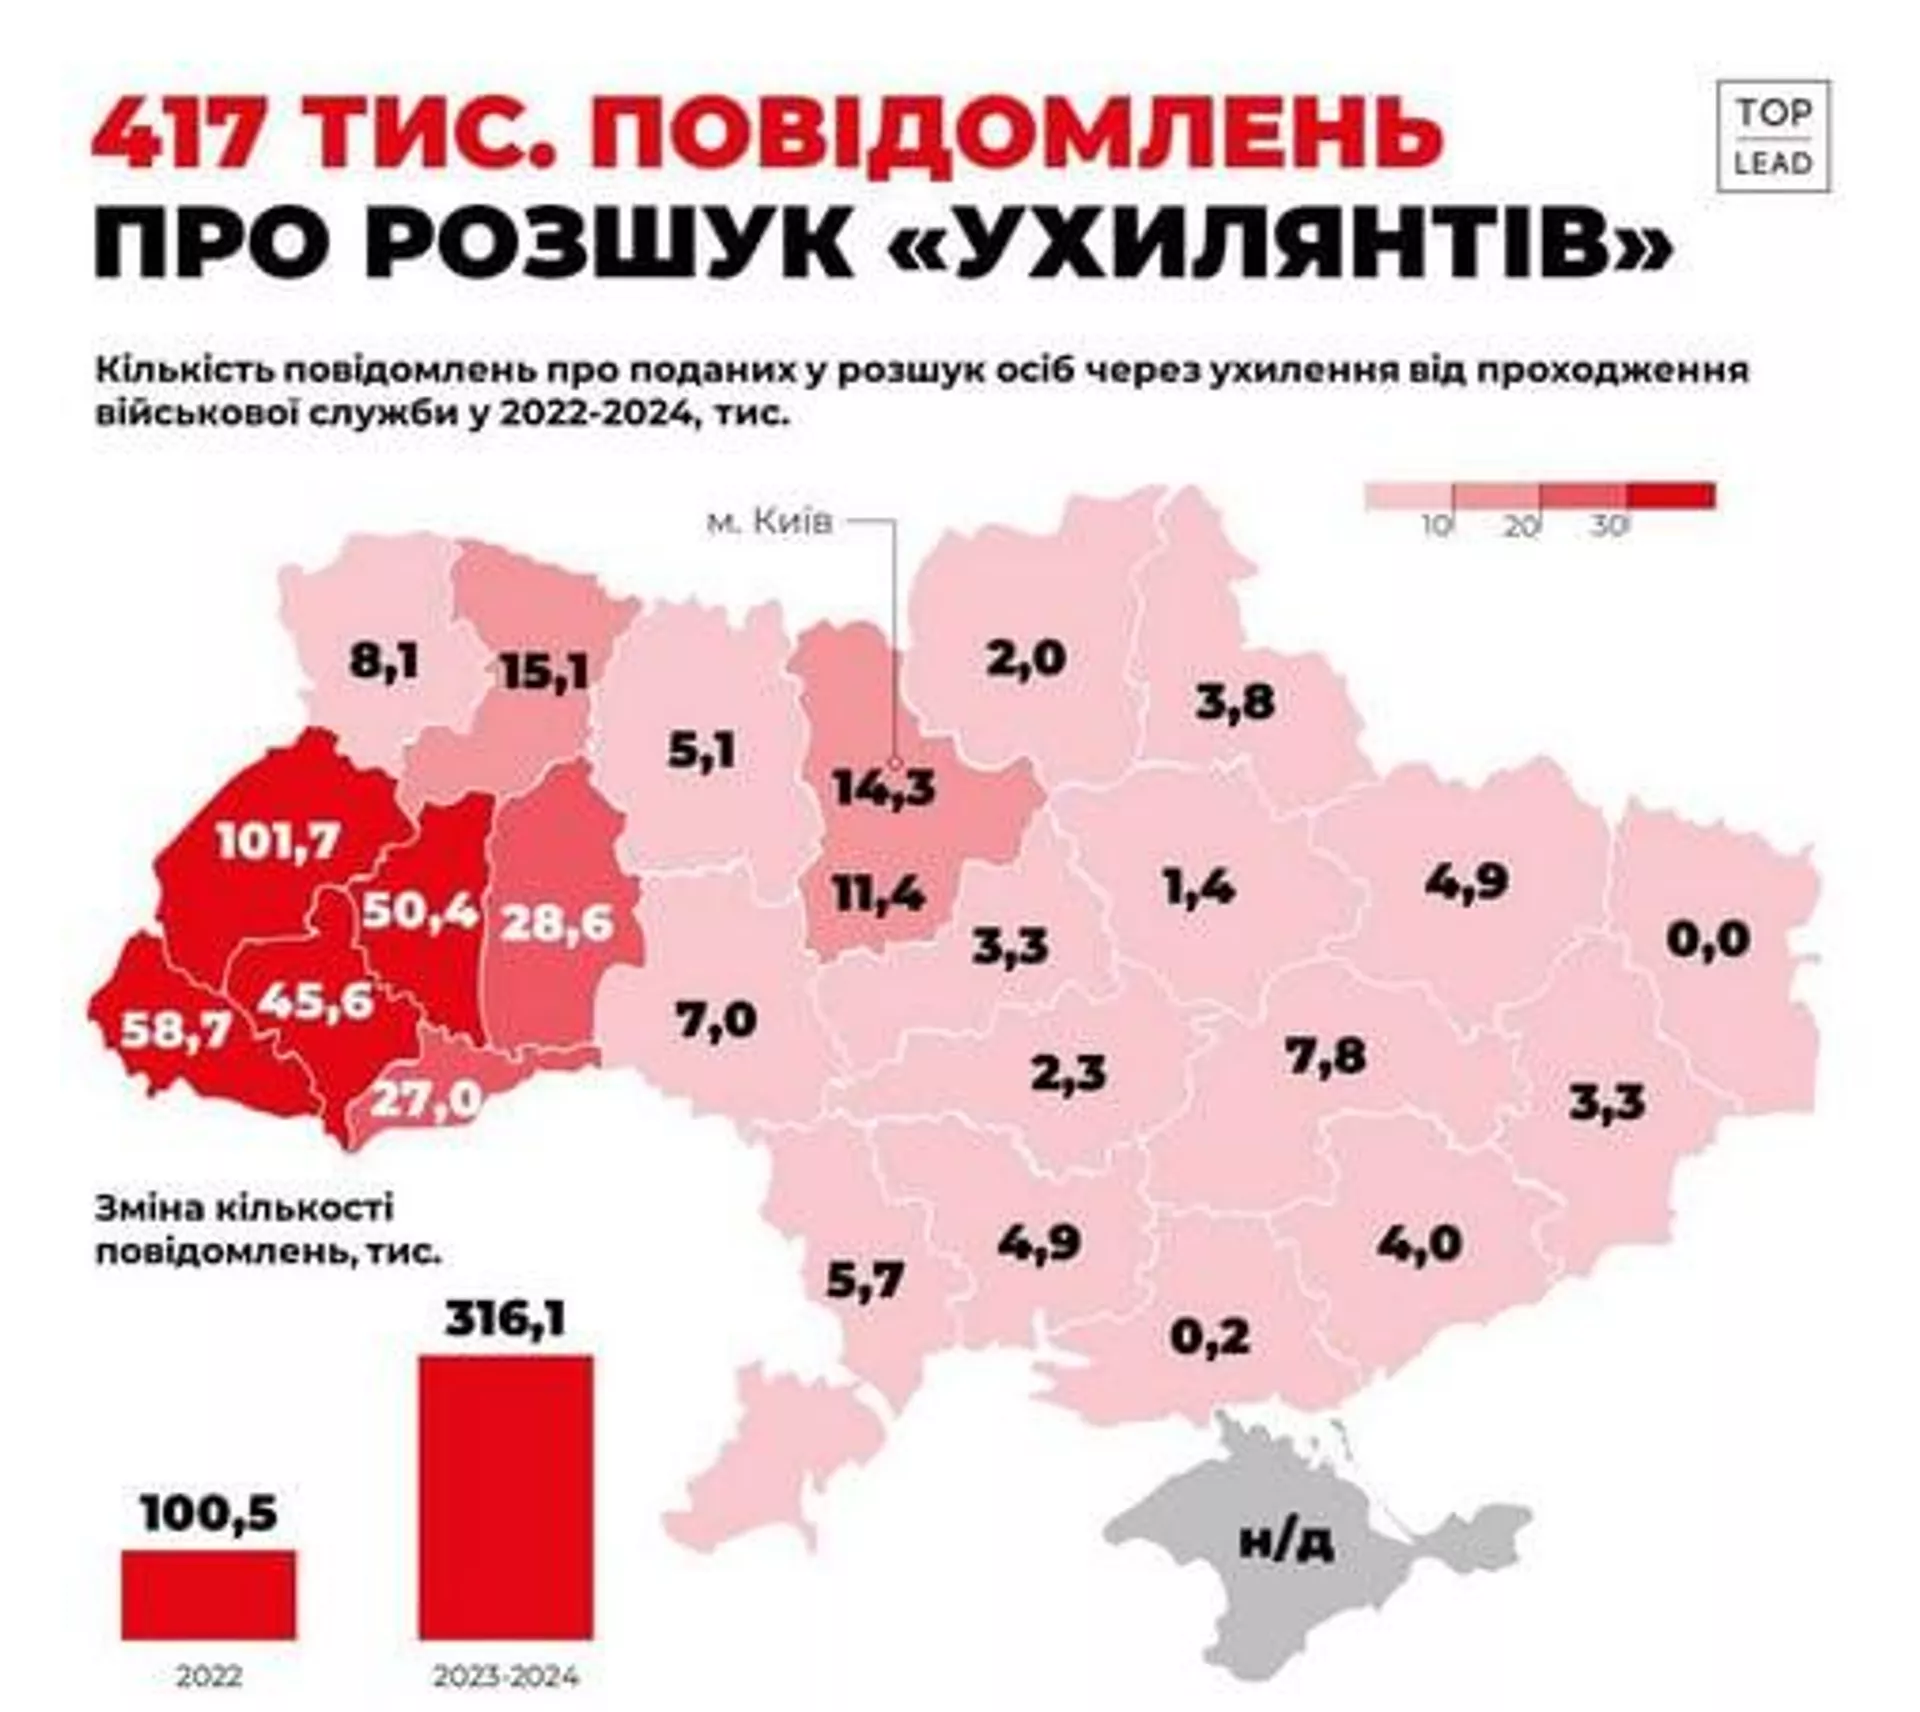 2022年2月以降の地域別の徴兵忌避者数を示すウクライナのメディアマップでは、ウクライナ中部、東部、南部に比べて、大部分が農村部で人口の少ない西部地域での症例数が非常に不均衡であることが明らかになりました。- スプートニクインターナショナル、1920年、2024年7月18日